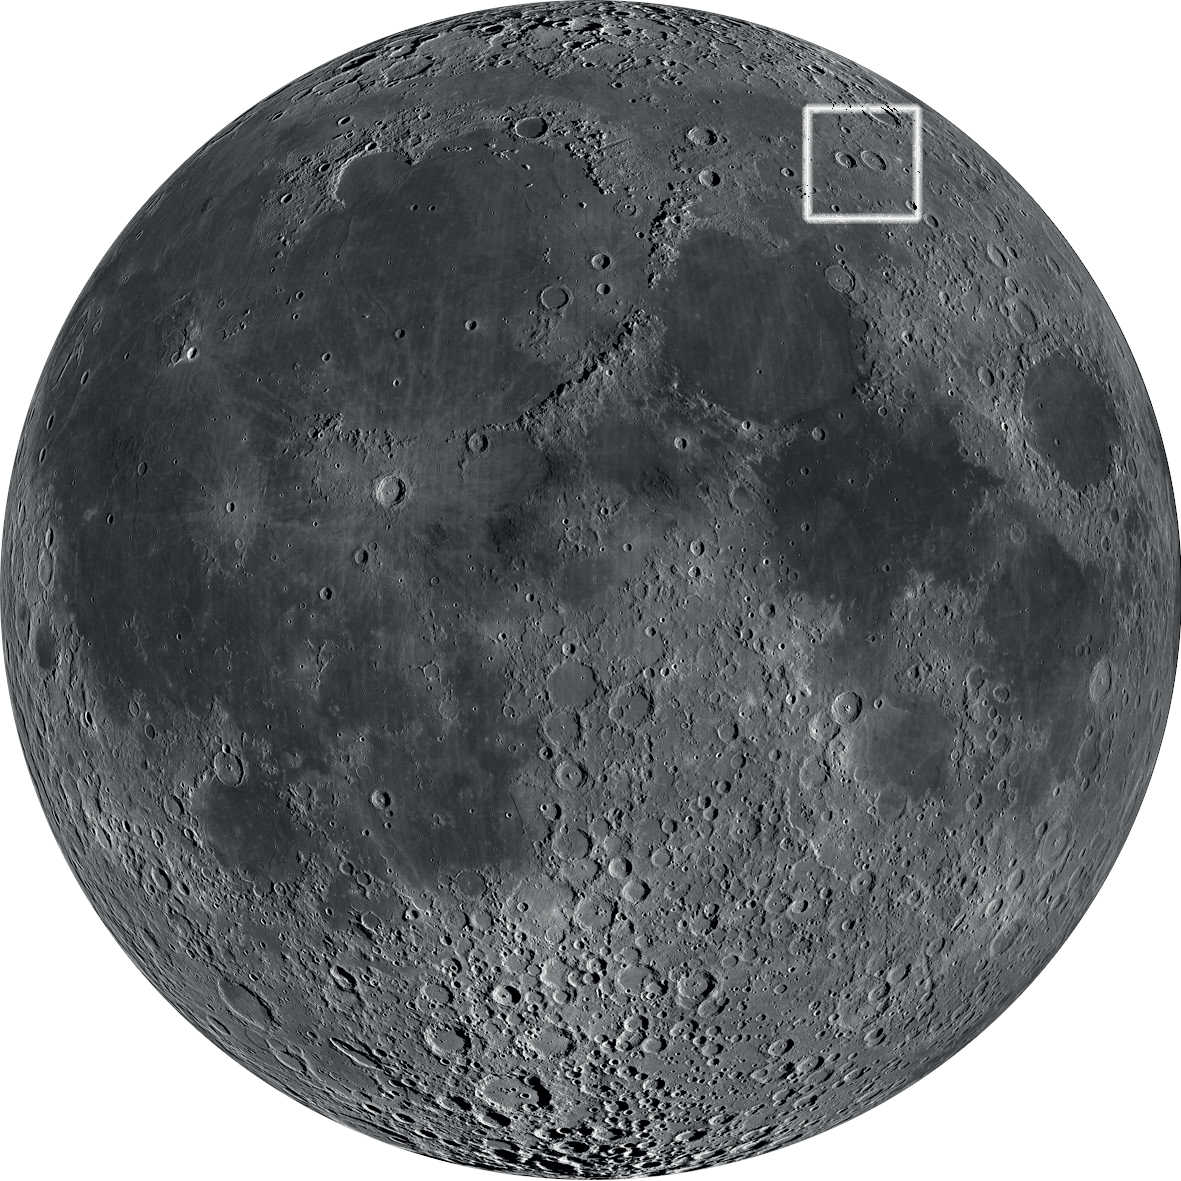 Det attraktiva kraterparet är beläget i månens nordöstra kvadrant. 
NASA/GSFC/Arizona State University